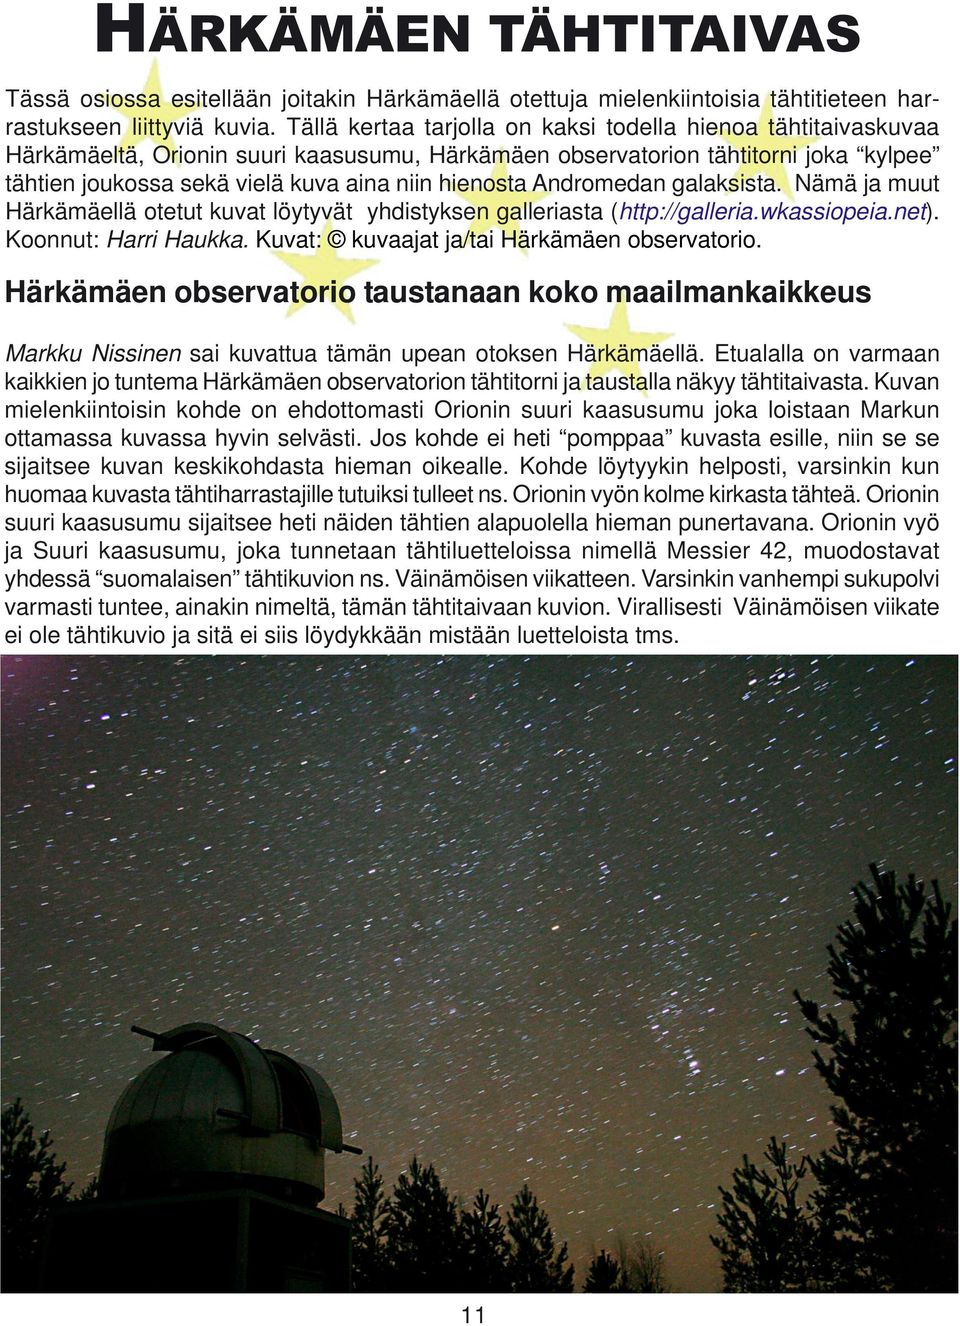 Andromedan galaksista. Nämä ja muut Härkämäellä otetut kuvat löytyvät yhdistyksen galleriasta (http://galleria.wkassiopeia.net). Koonnut: Harri Haukka. Kuvat: kuvaajat ja/tai Härkämäen observatorio.